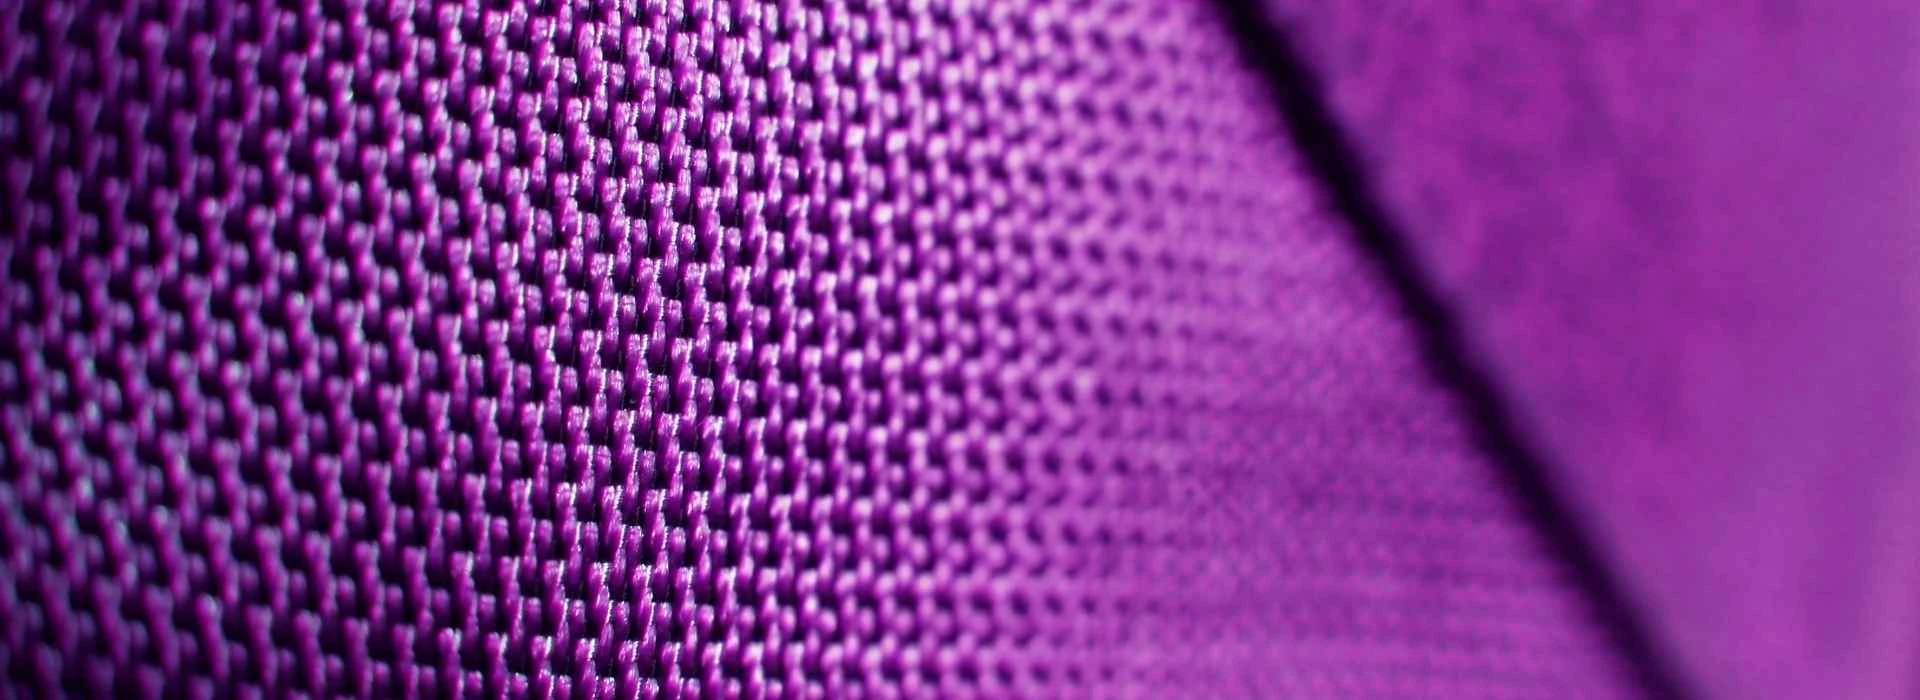 Slajd 2 - fioletowa tkanina